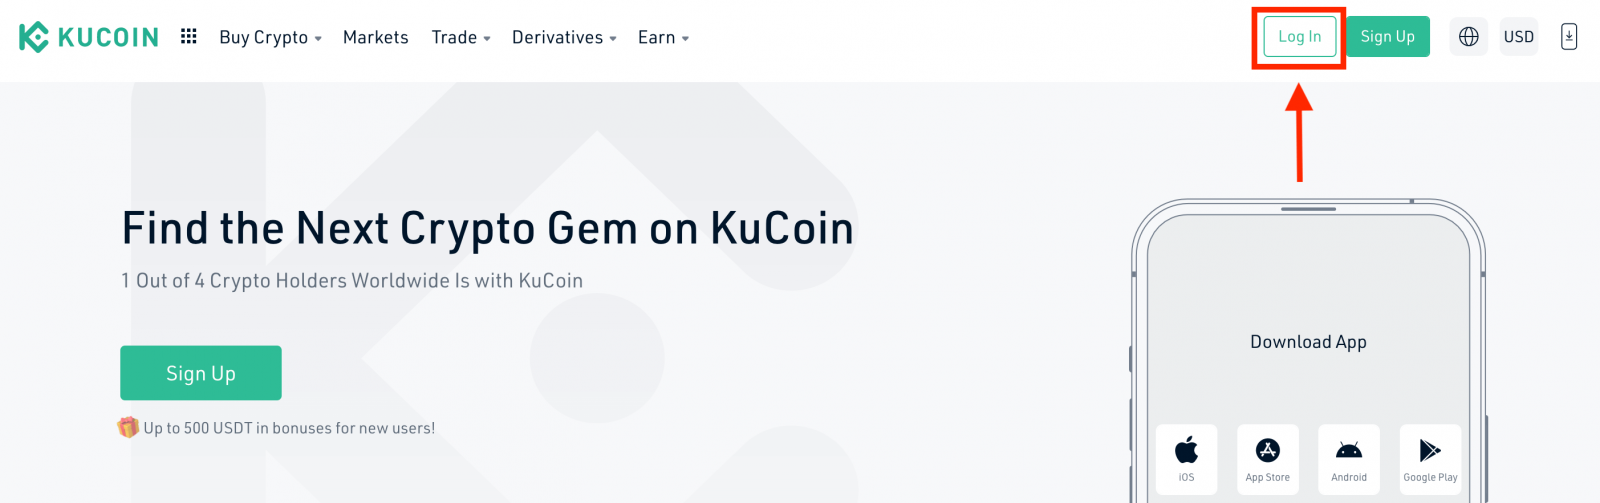 KuCoin में कैसे लॉगिन करें